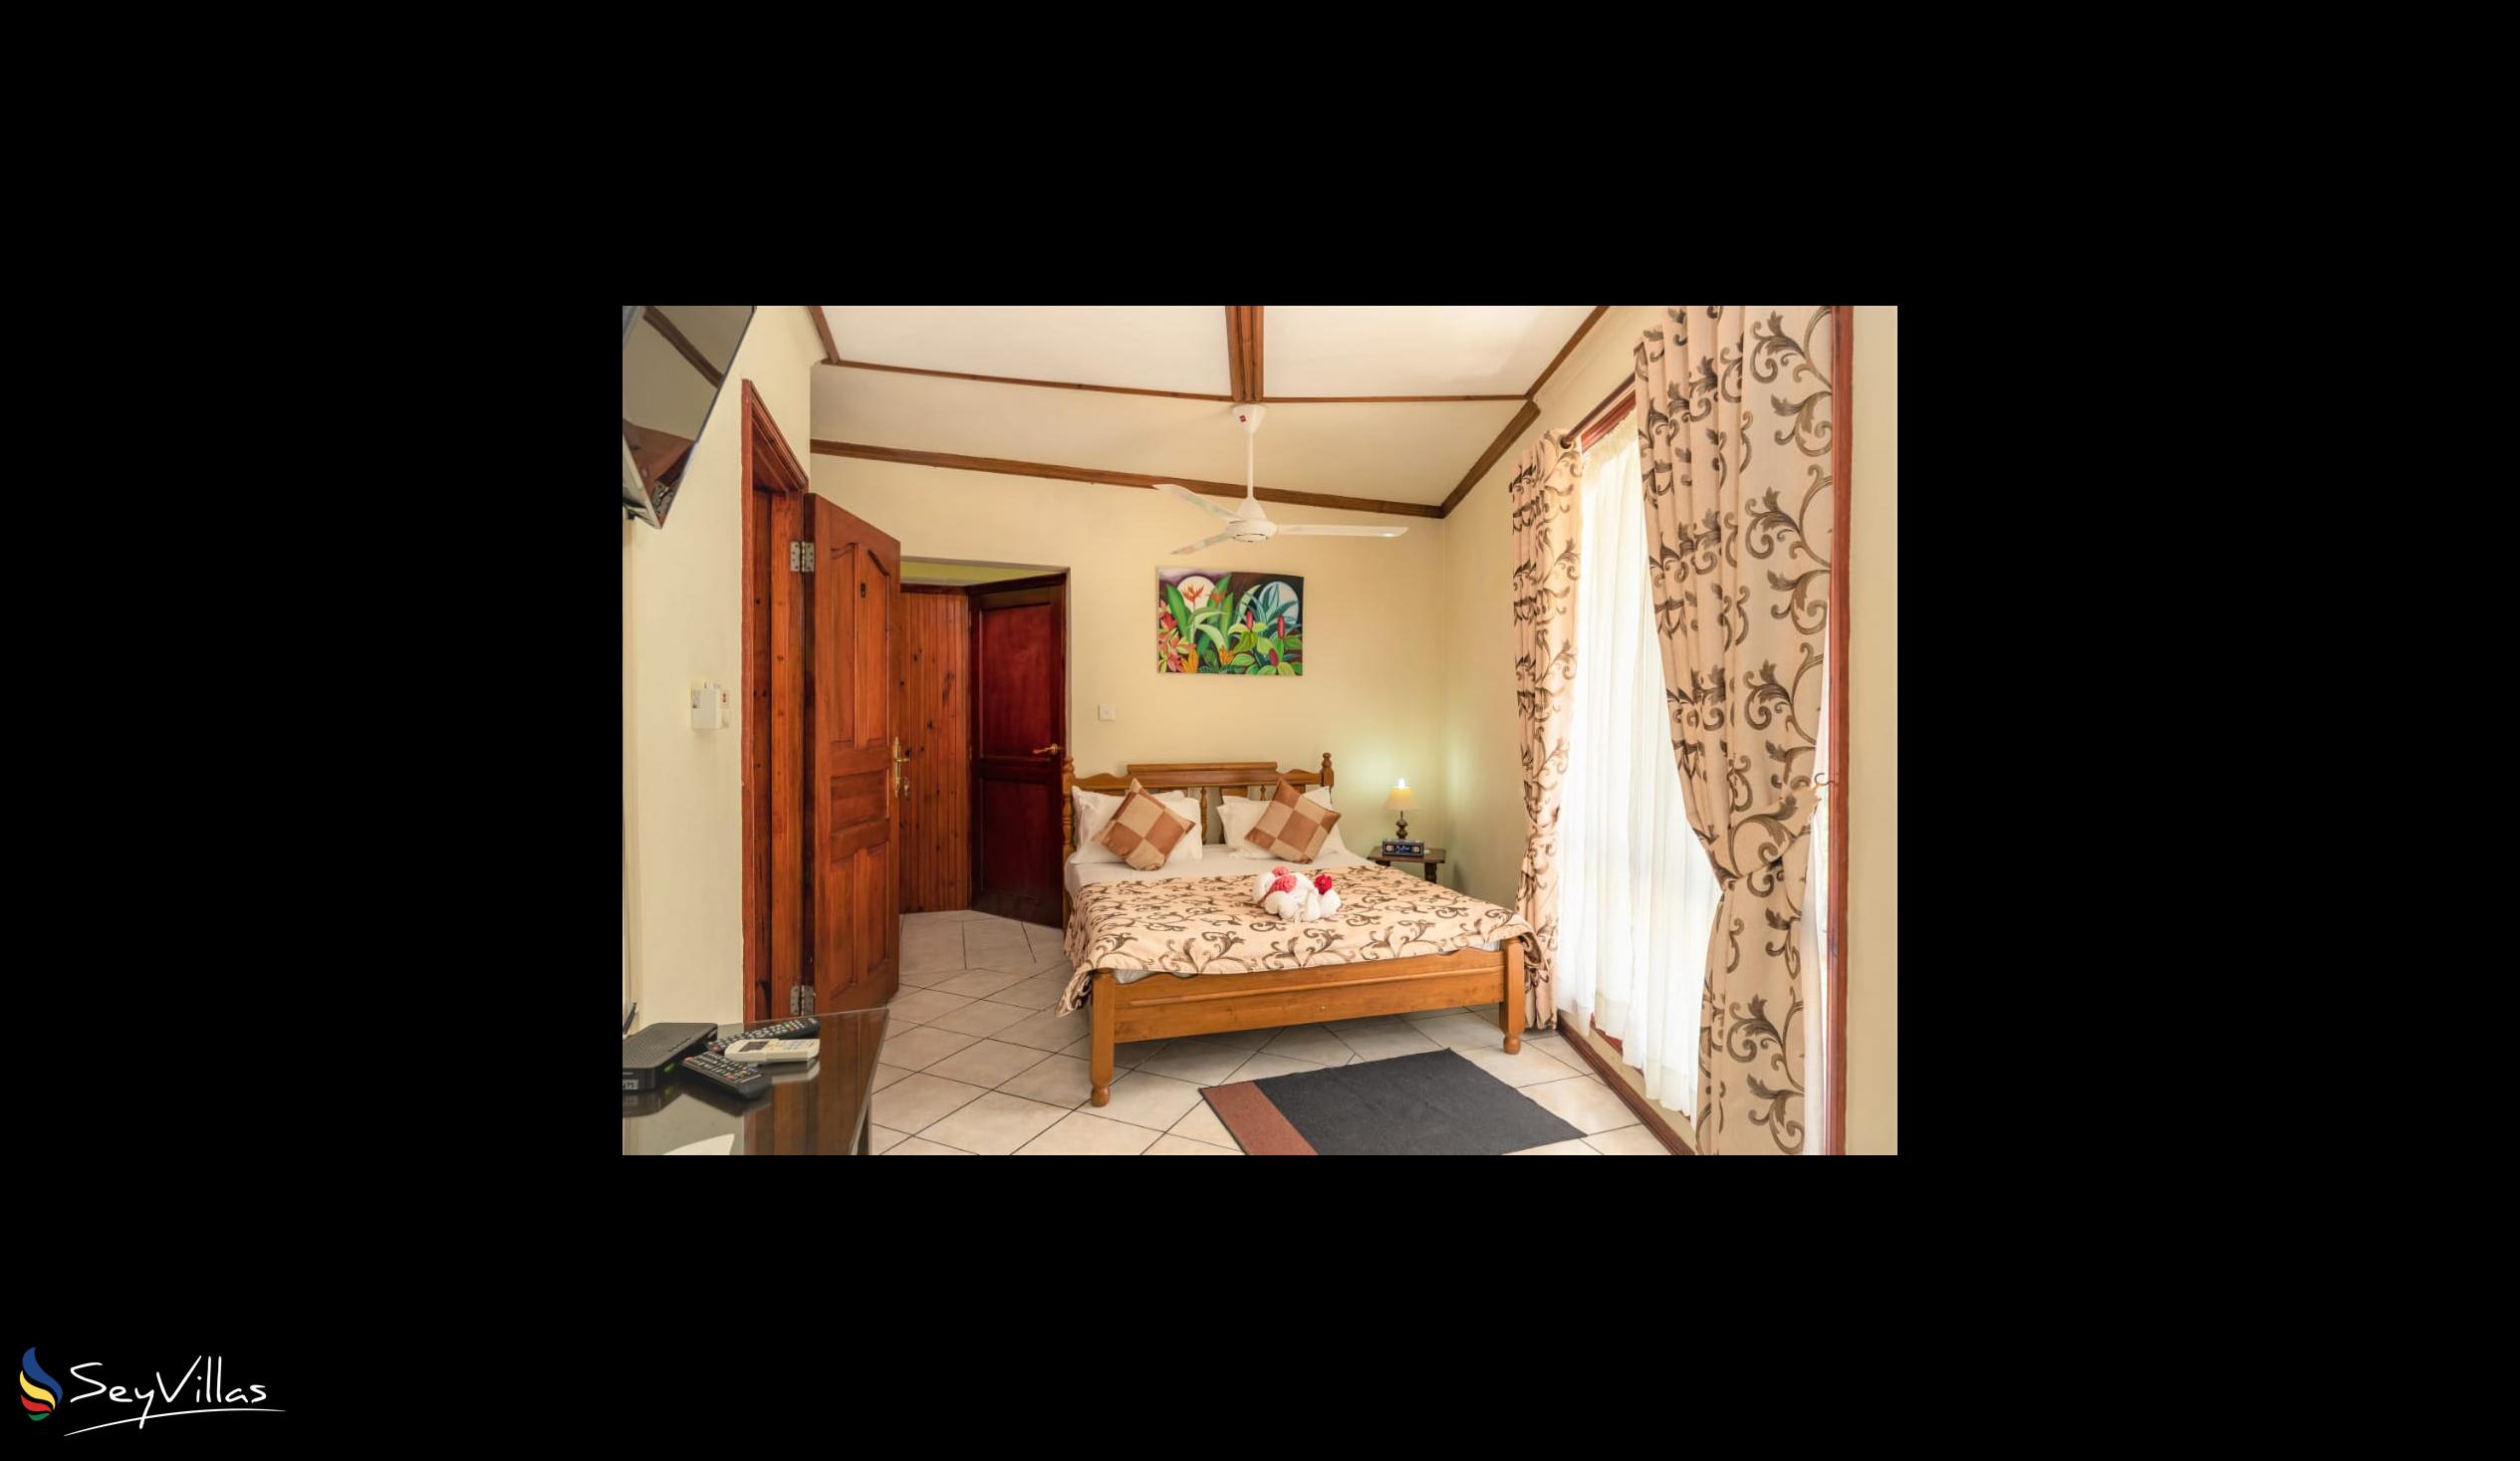 Foto 45: Carana Hilltop Villa - Chambre Standard - Mahé (Seychelles)